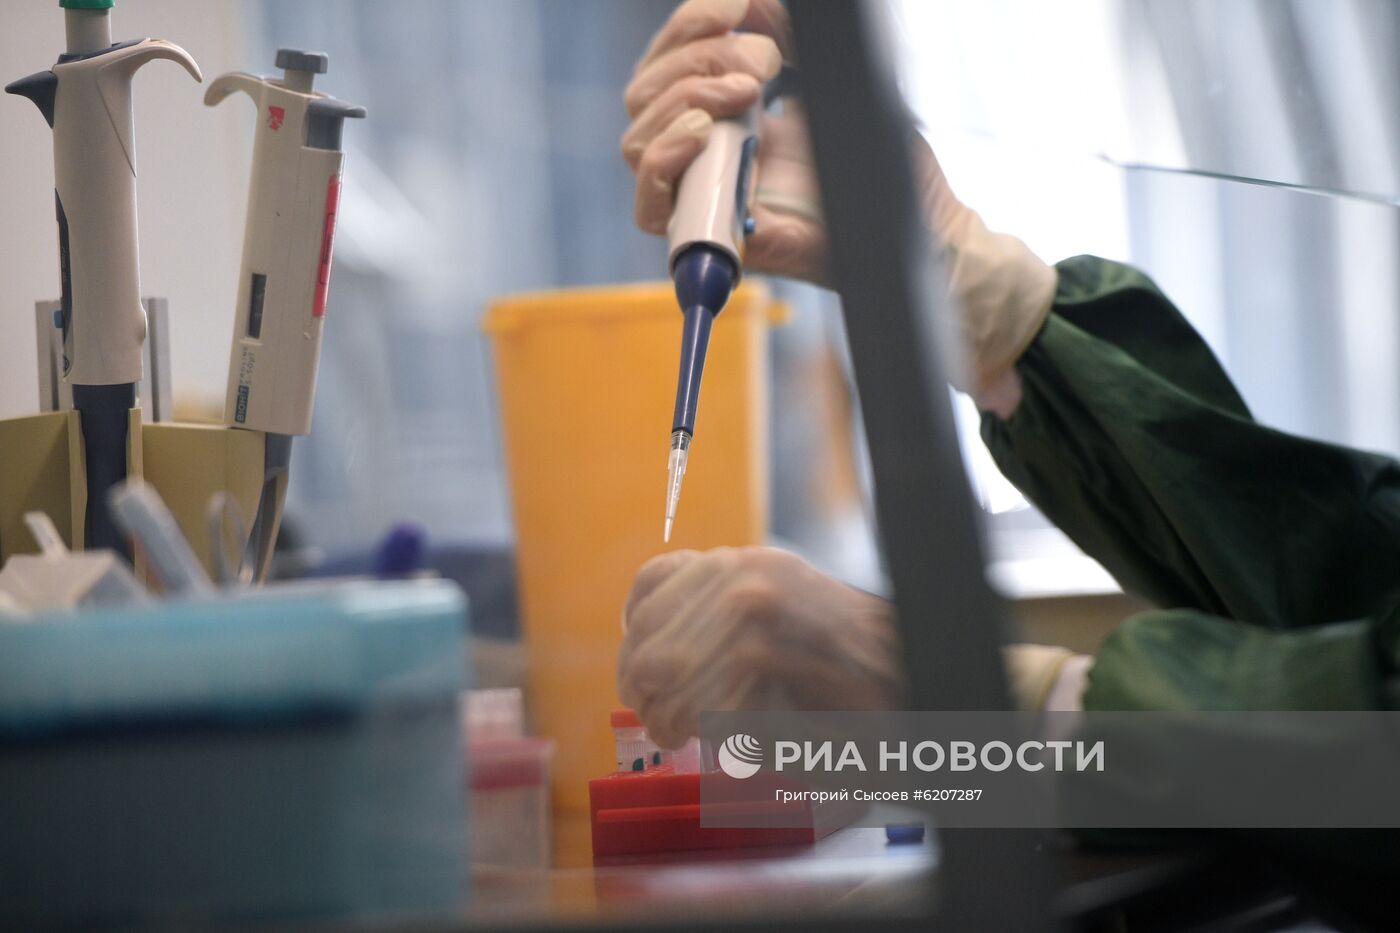 Работа вирусологической лаборатории, где производится анализ на новую коронавирусную инфекцию